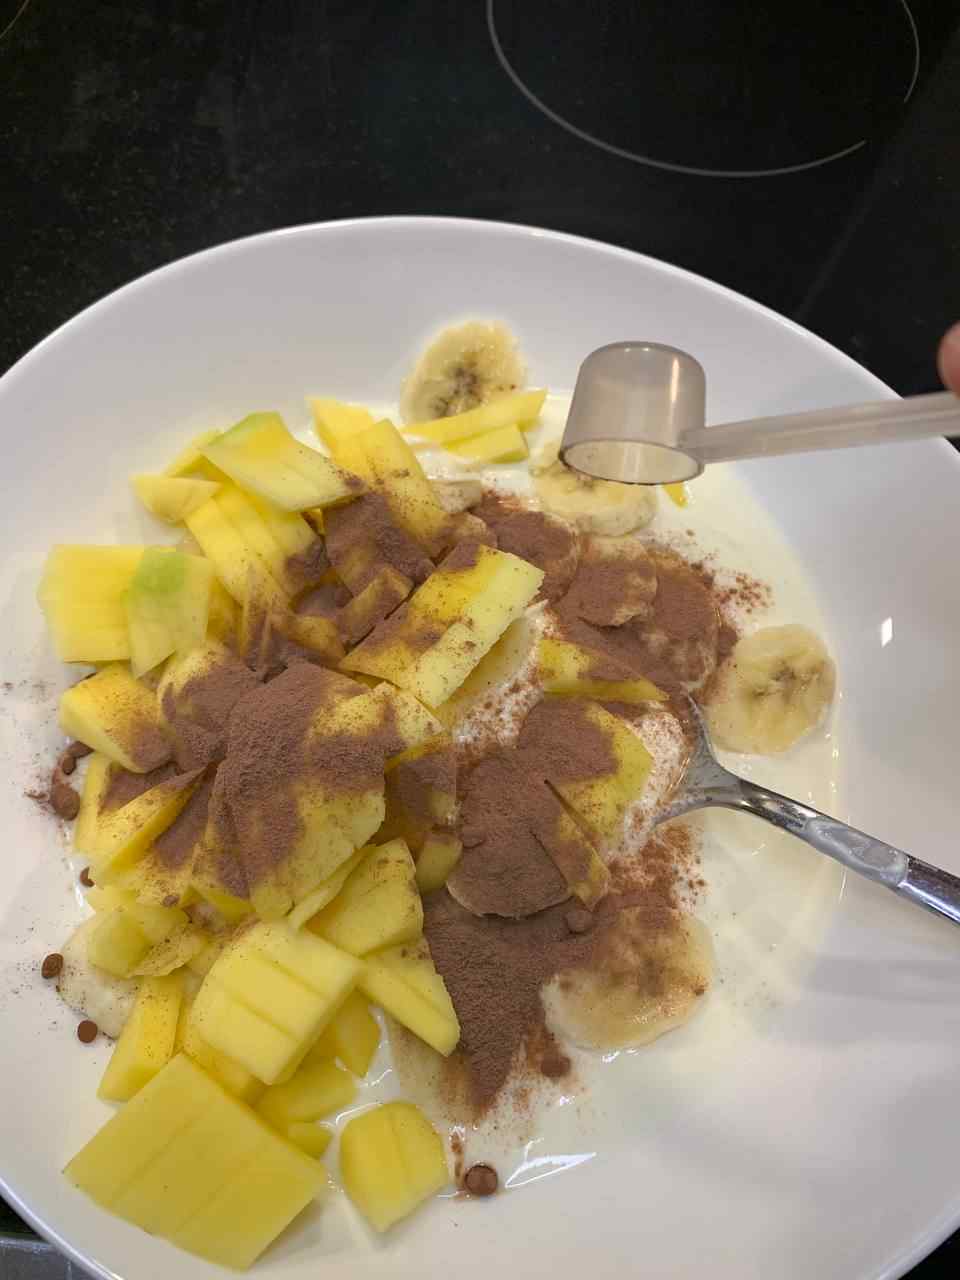 Mango, Banane & Flavor zum Joghurt hinzufügen